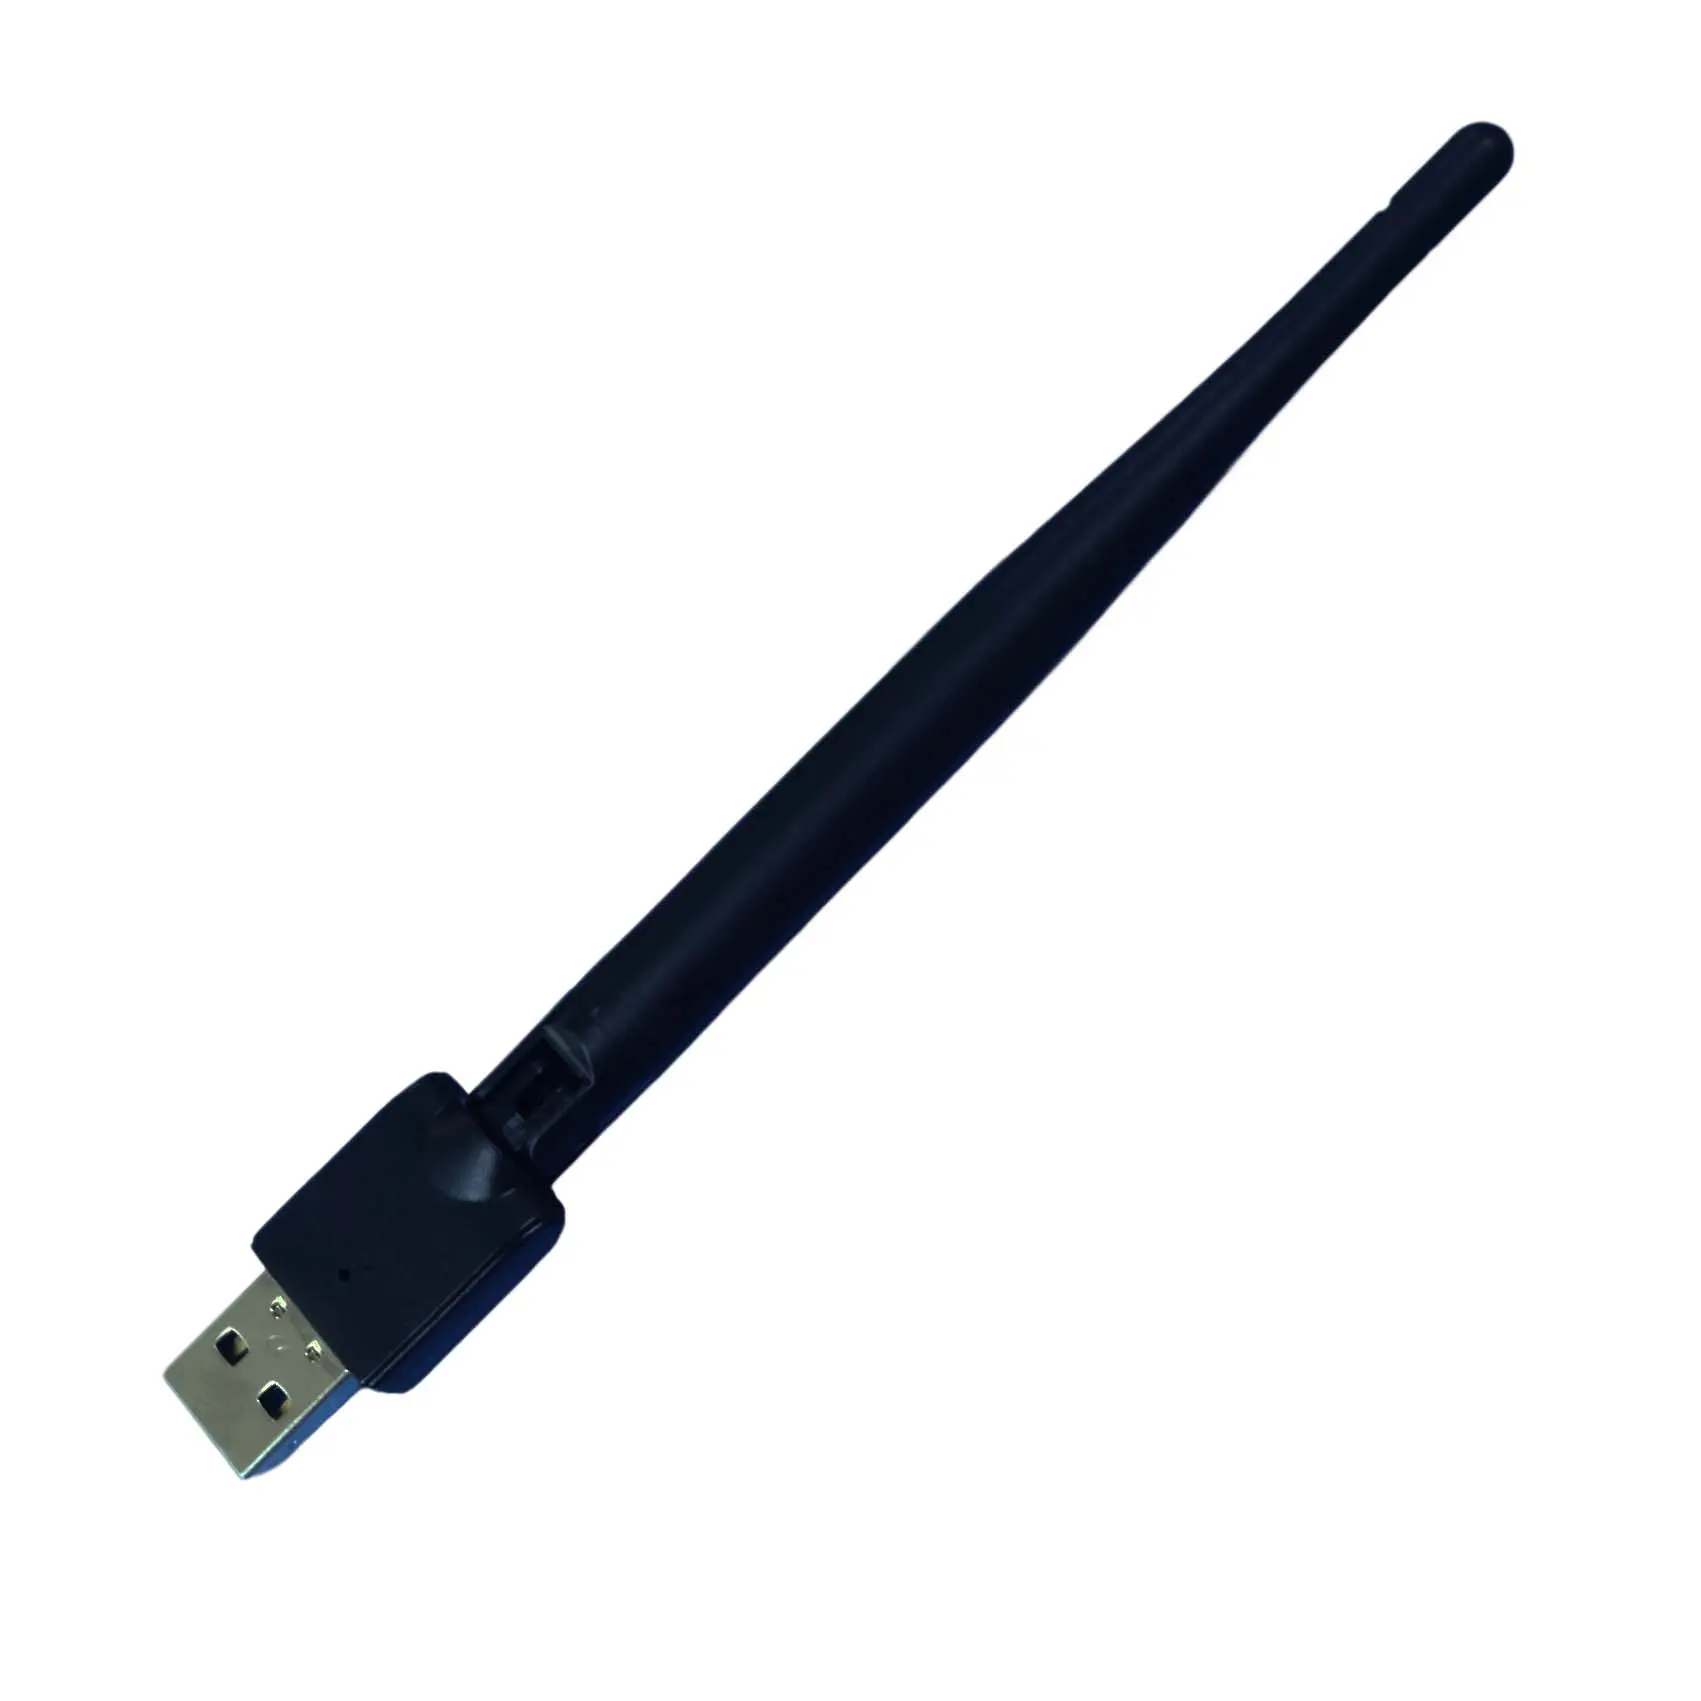 محول واي فاي بسعة 150 ميجابت/ثانية بسعر المصنع محول USB صغير محمول ببطاقة شبكة